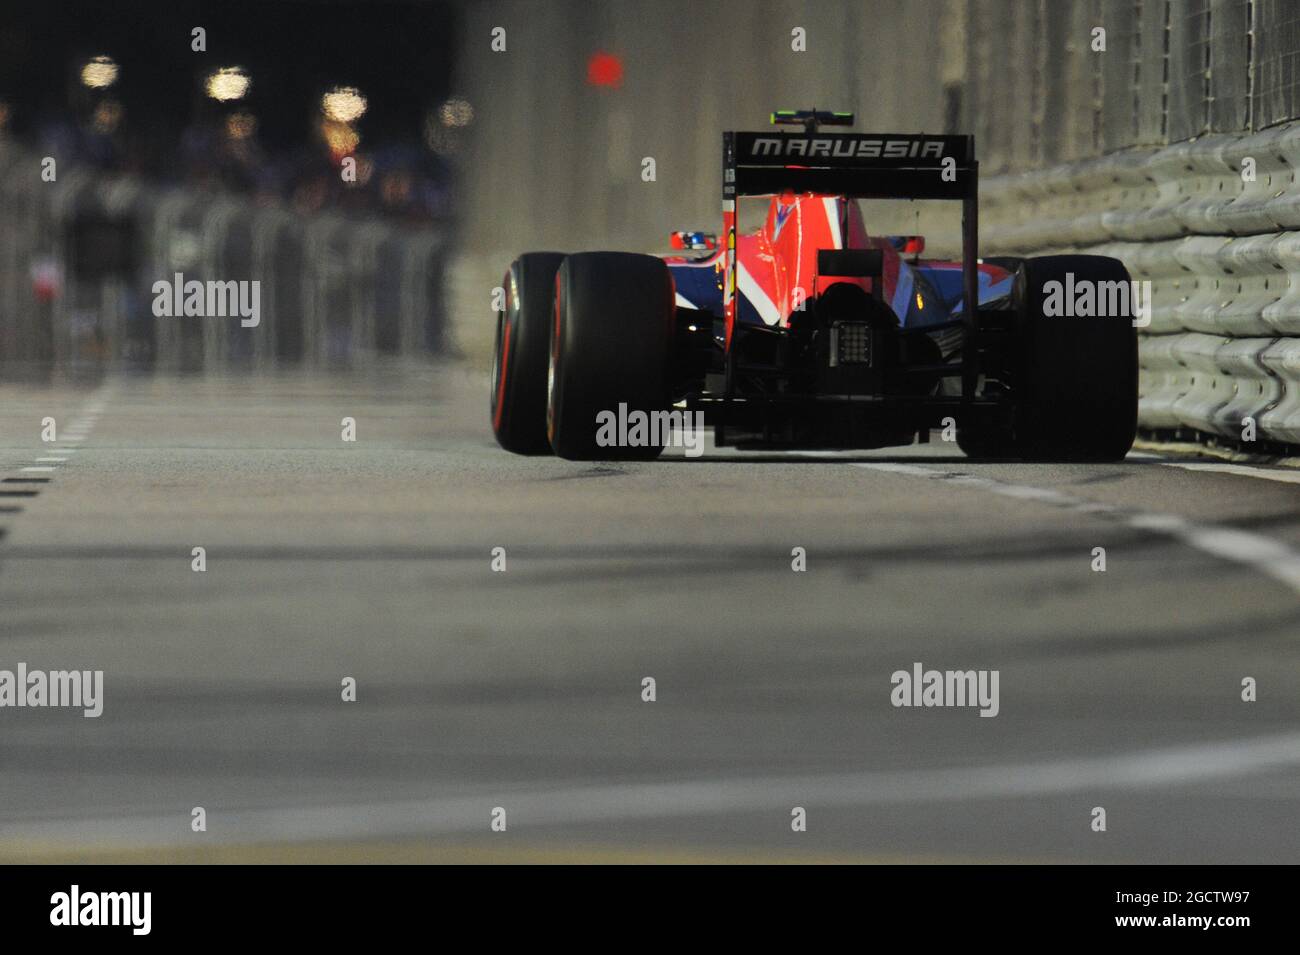 Max Chilton (GBR) Marussia F1 Team MR03. Gran Premio di Singapore, sabato 20 settembre 2014. Circuito Marina Bay Street, Singapore. Foto Stock